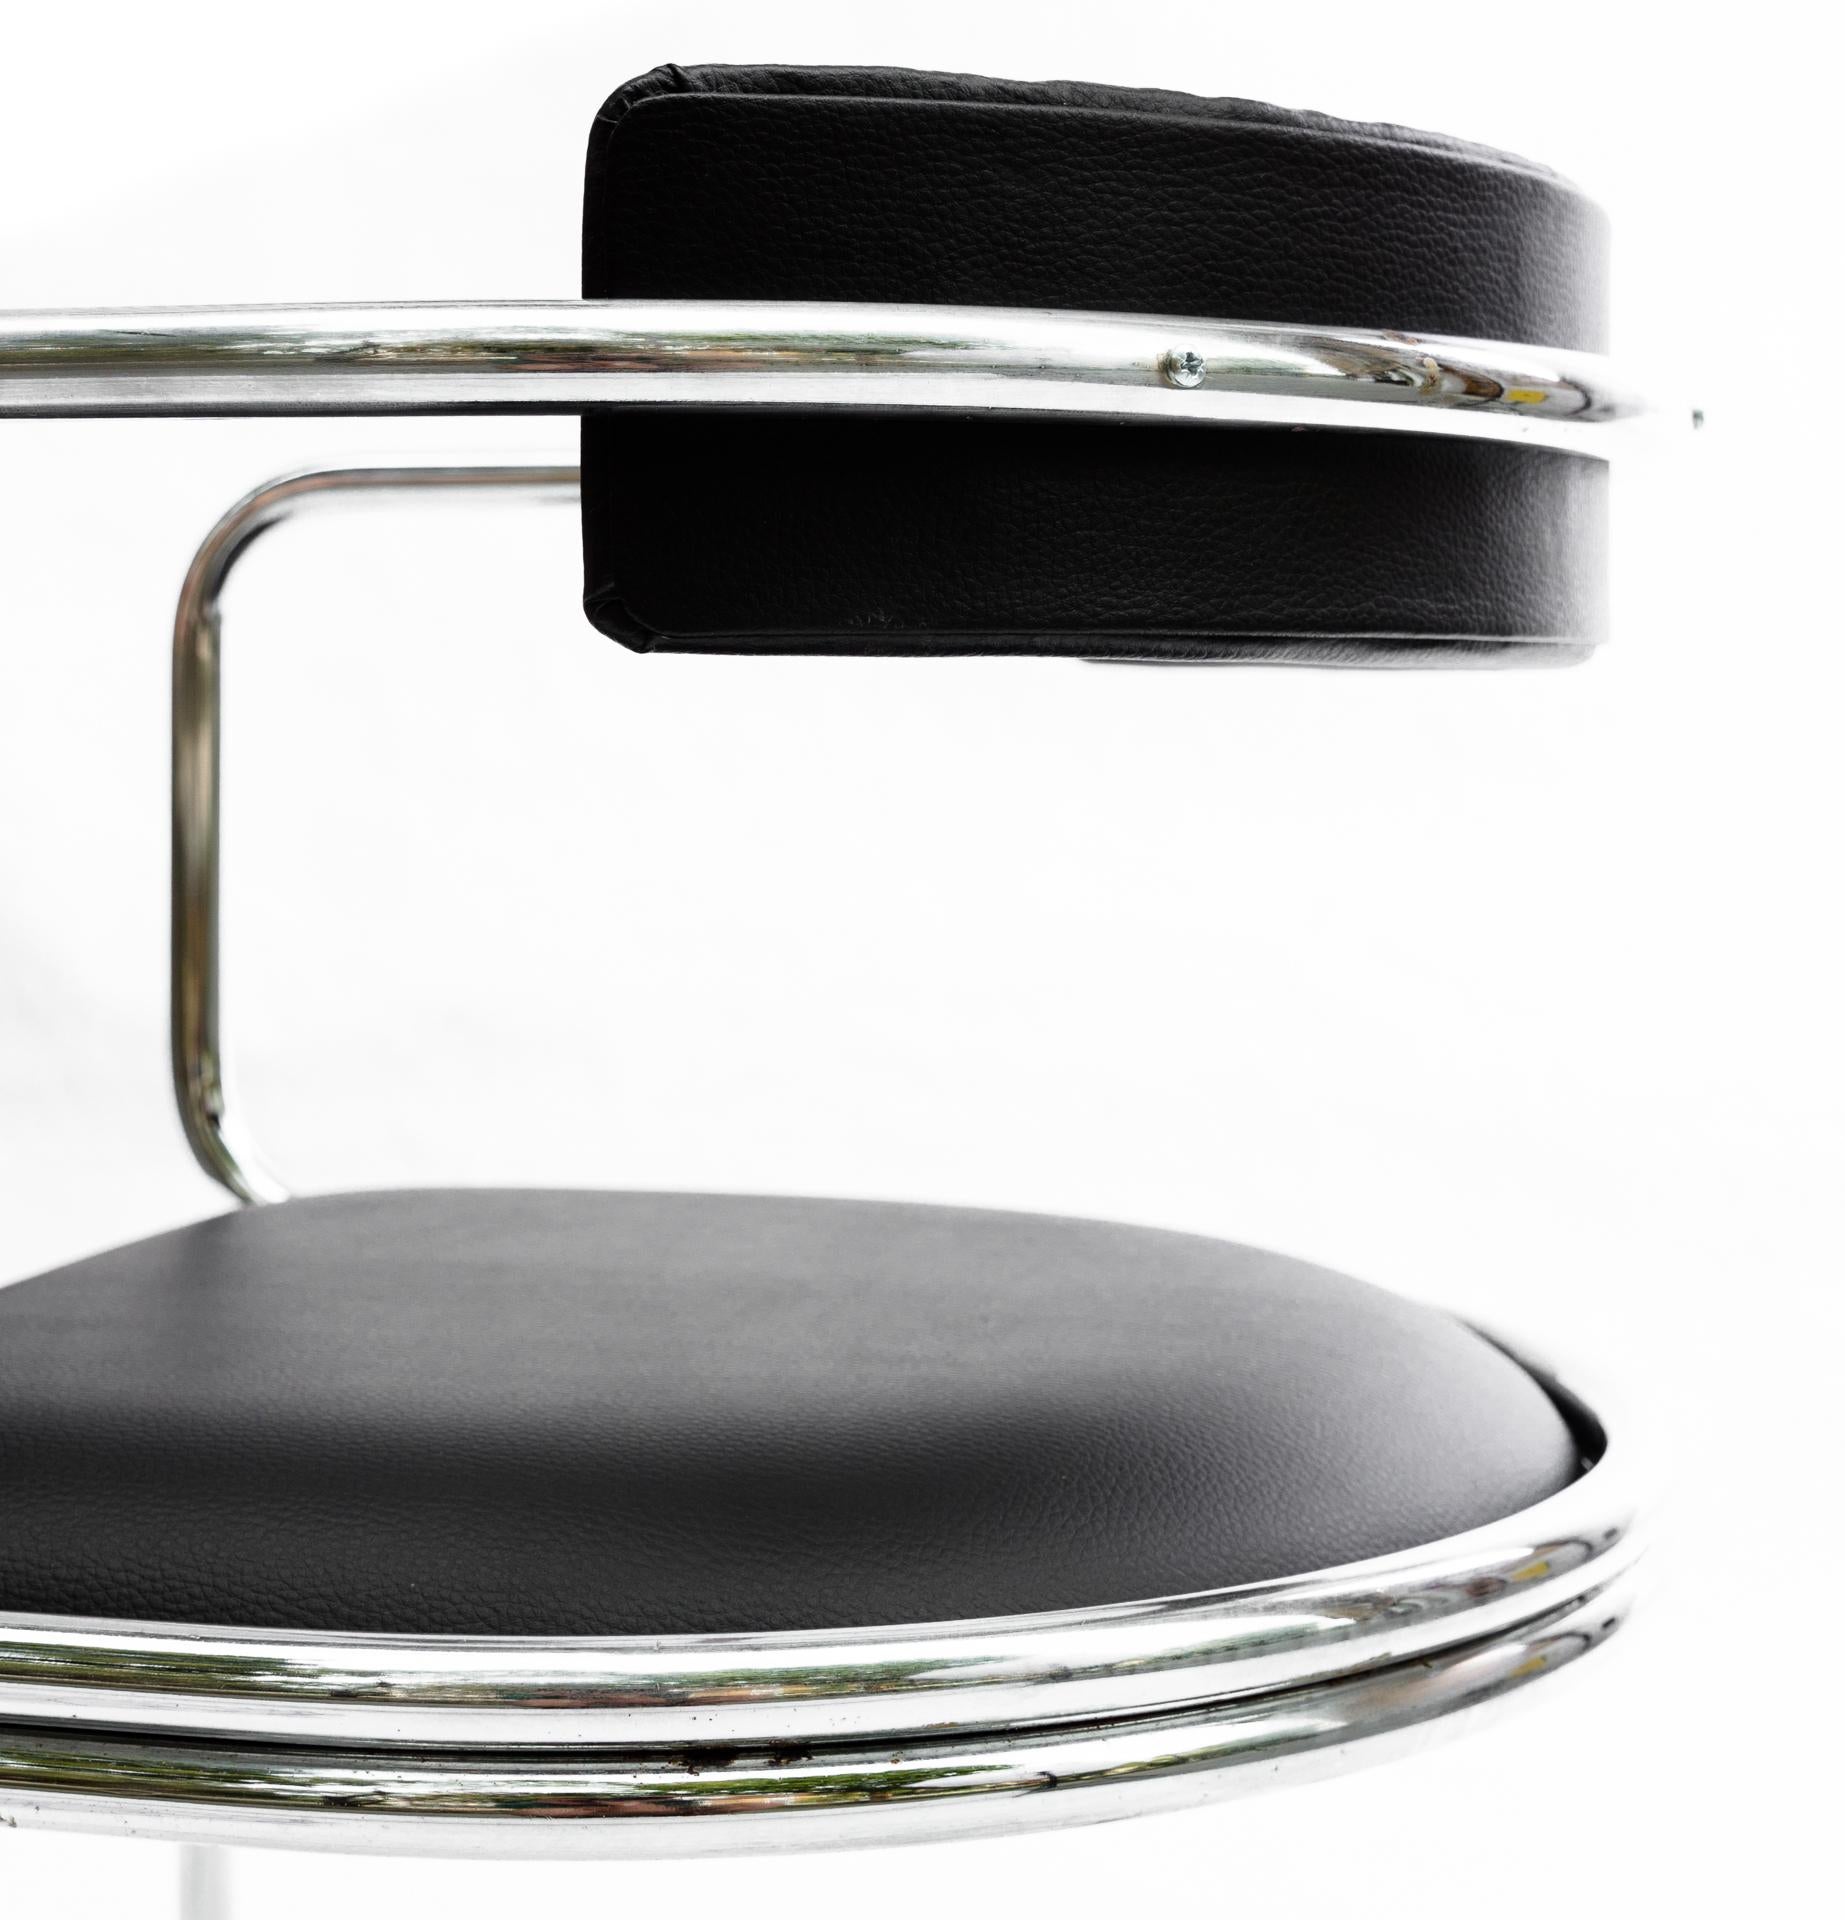 Bauhaus Tubular Armchair, Marcel Breuer Style, Chrome Metal, Leather, 1960s For Sale 6